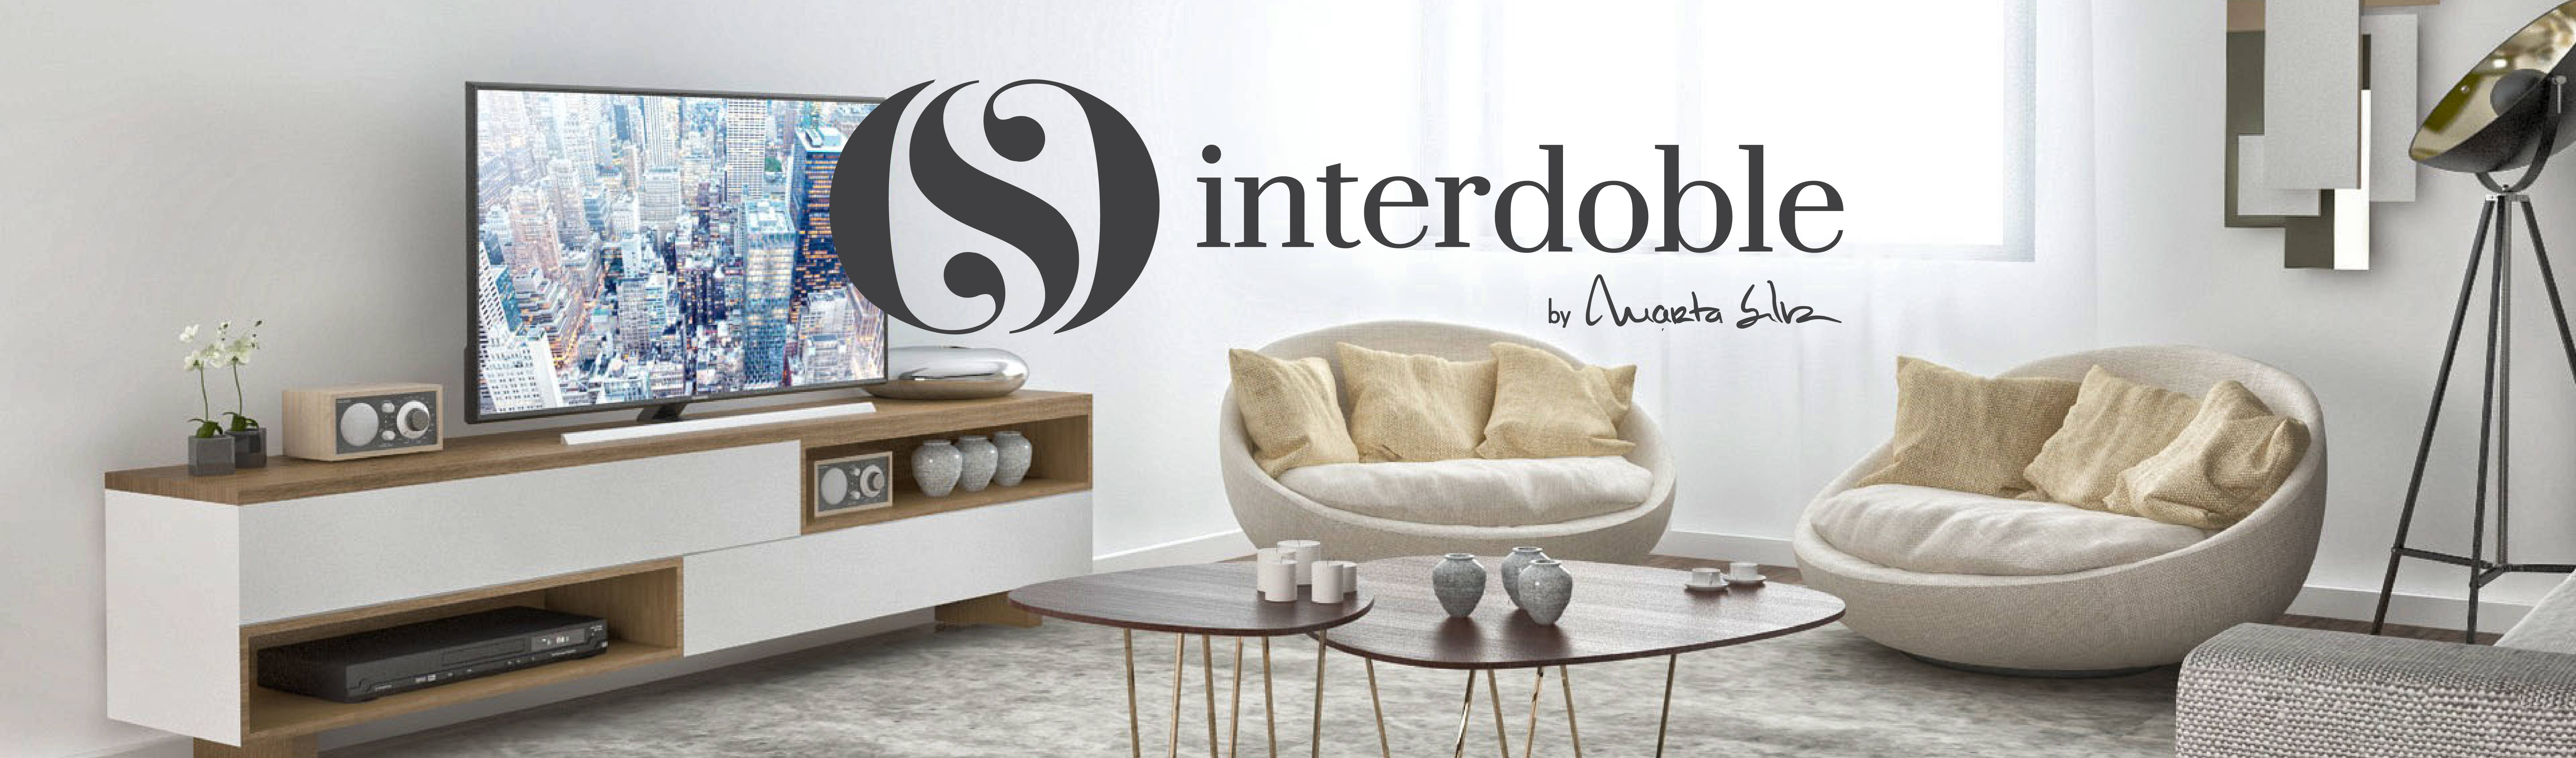 INTERDOBLE BY MARTA SILVA—Design de Interiores